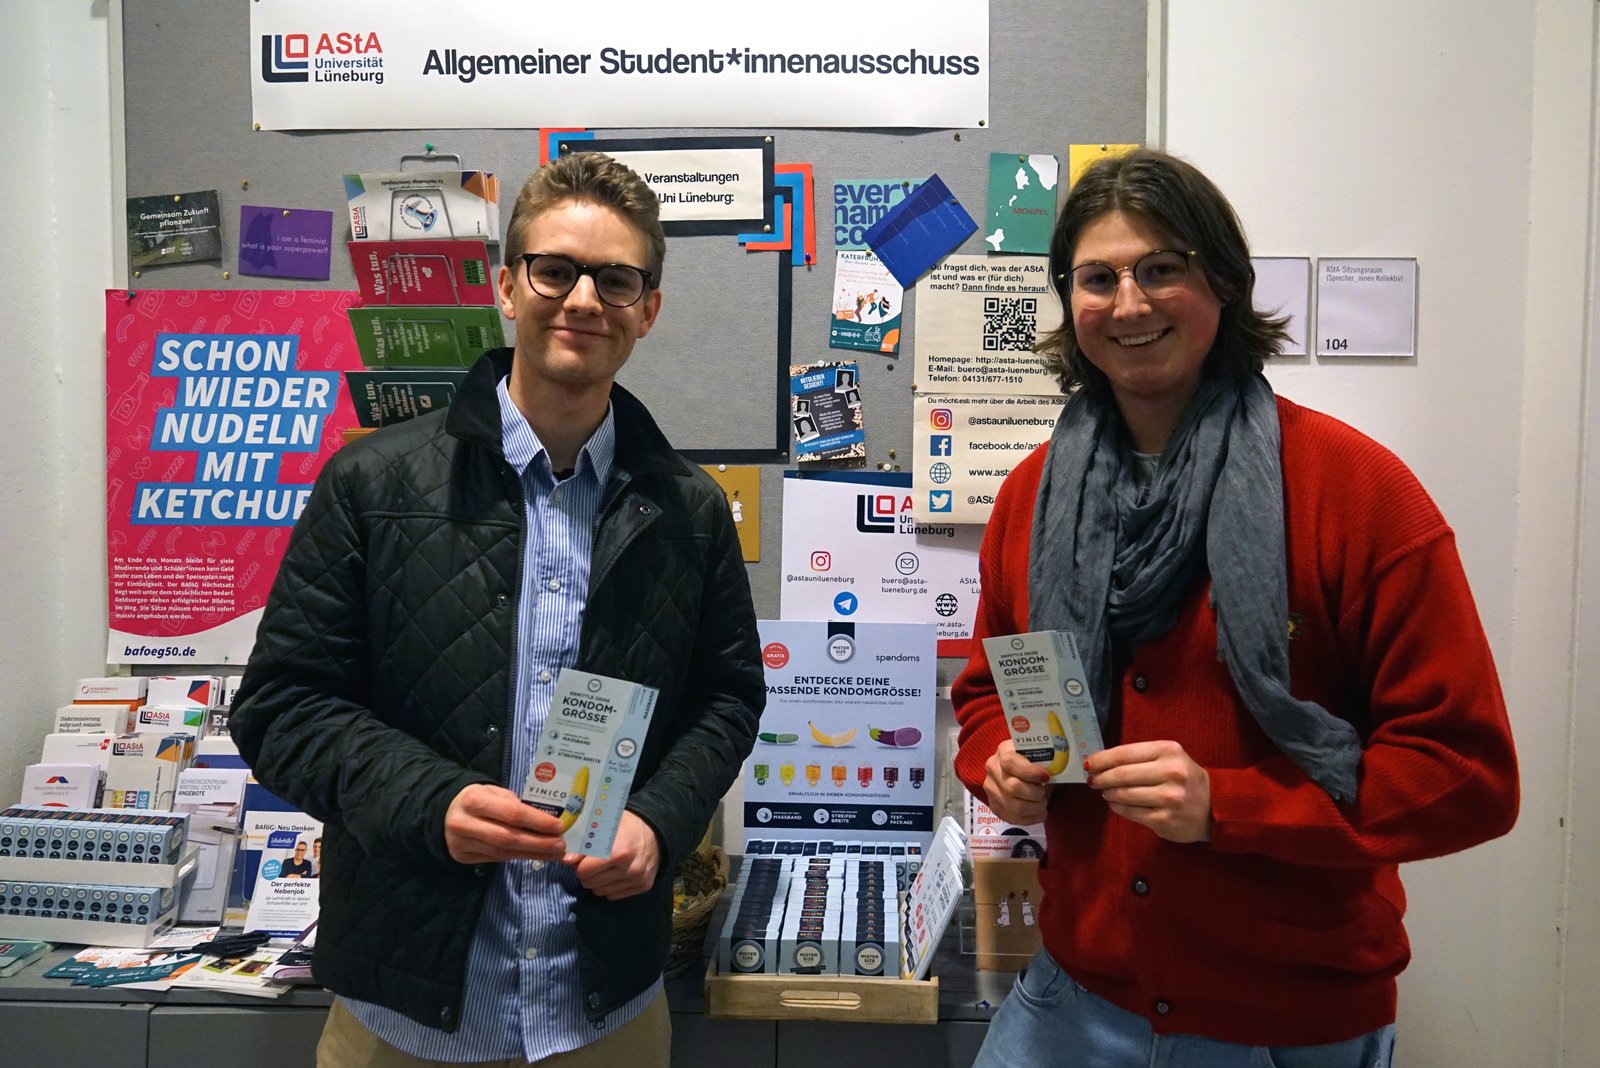 Luis de Spondoms (à gauche) inaugure le distributeur gratuit de préservatifs avec Max de l'AStA de l'université Leuphana de Lüneburg (à droite).